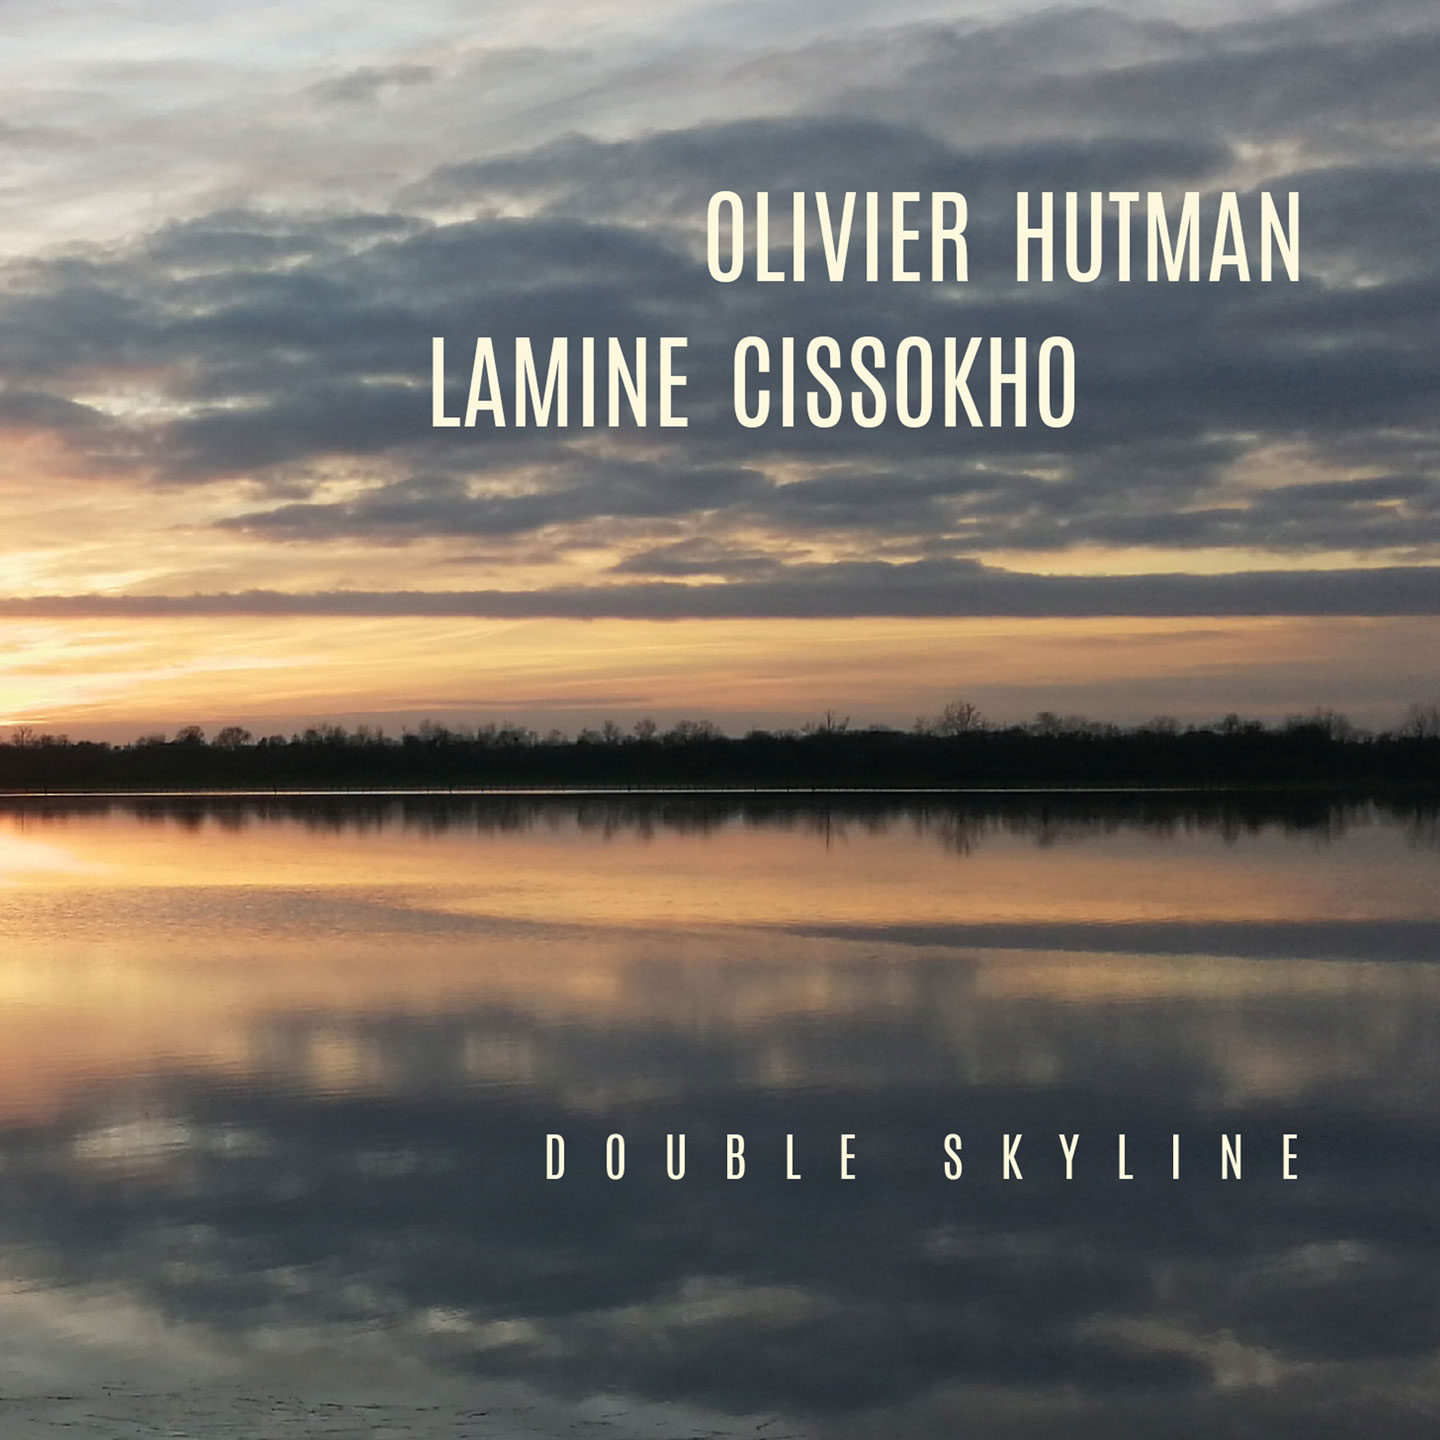 le-rayon-du-rim-sorties-de-disques-Cristal-Records-Olivier-Hutman-Lamine-Cissokho-Double-Skyline